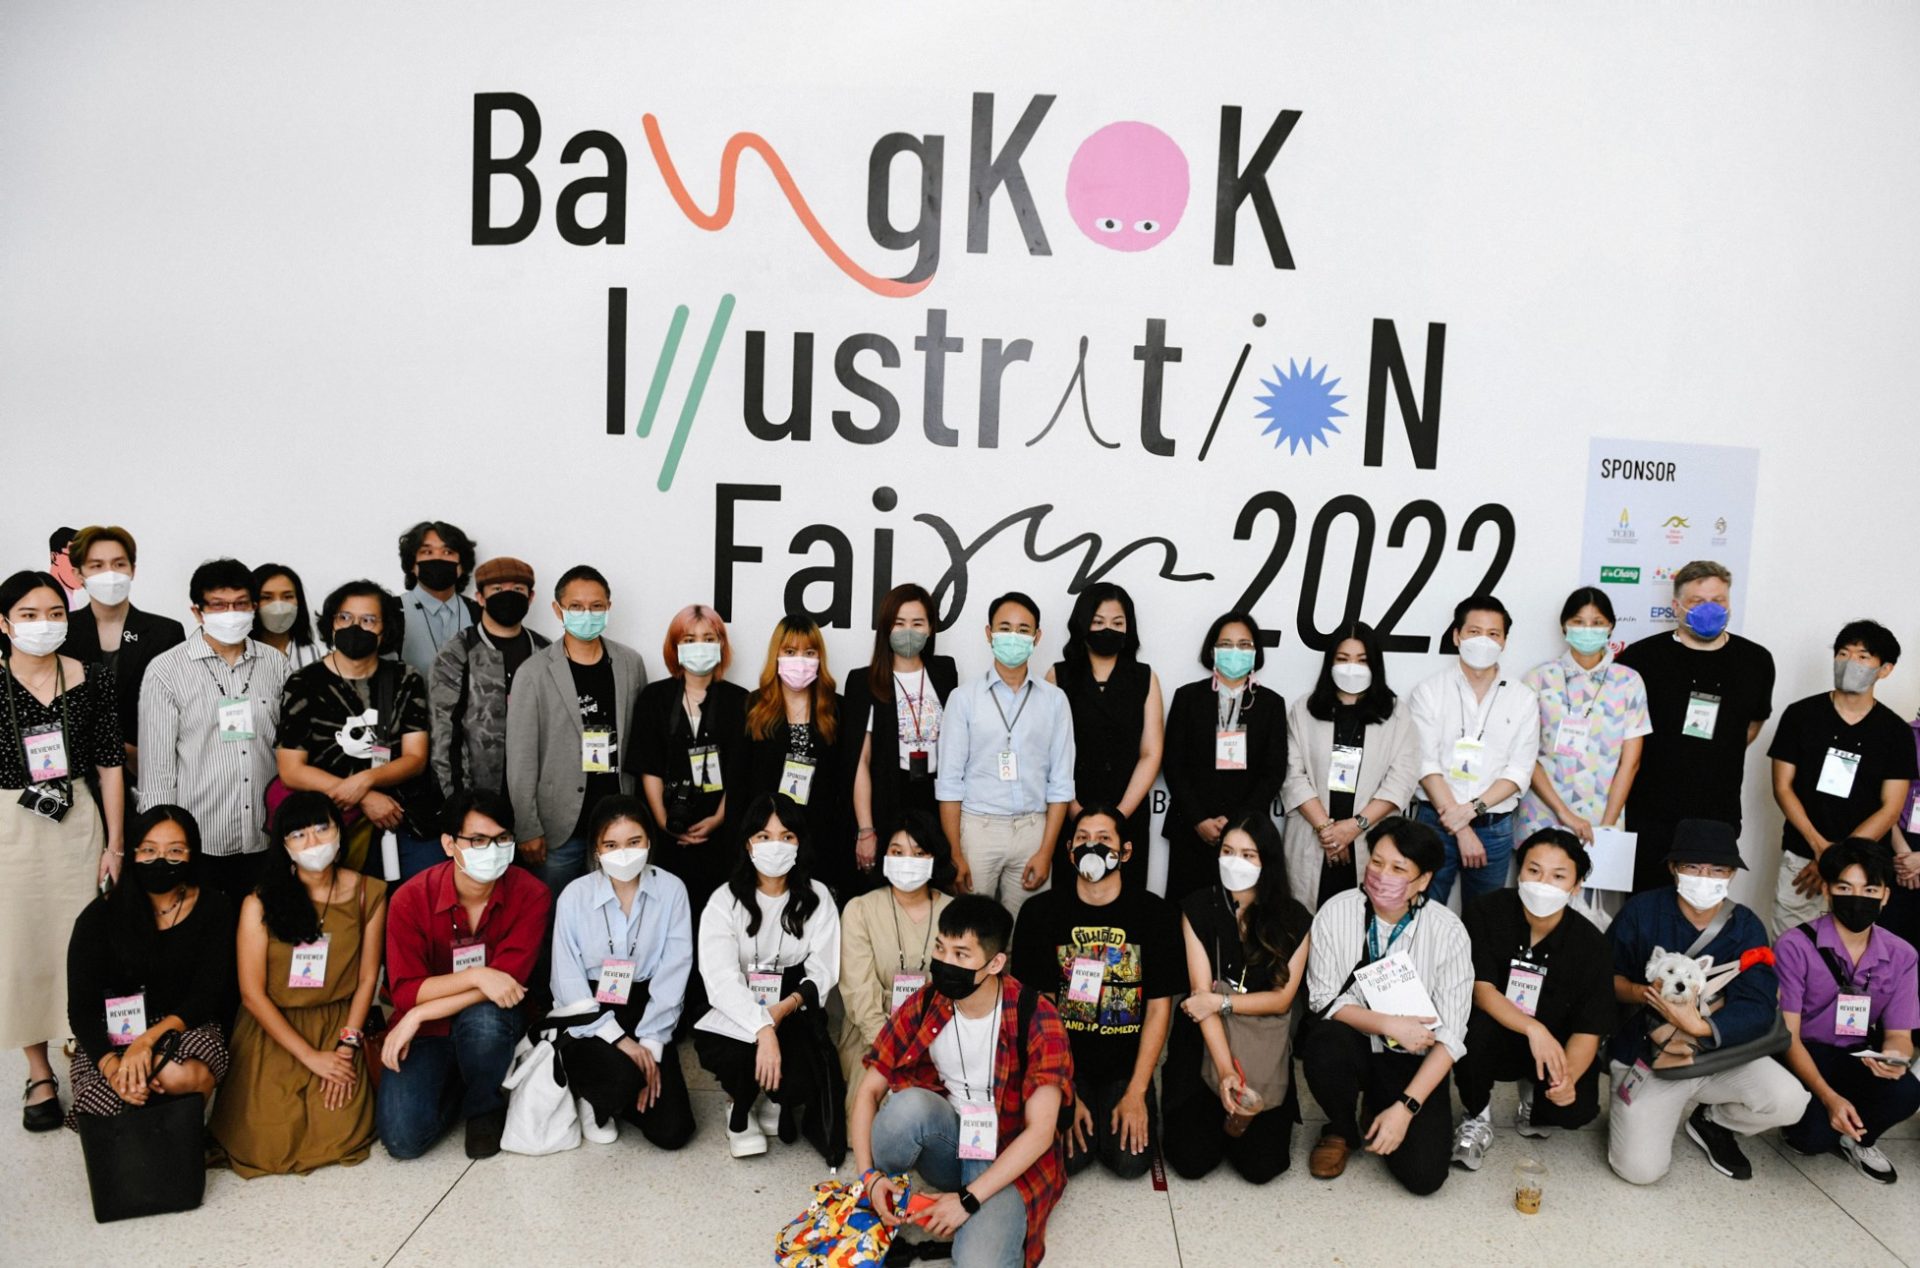 ให้สีสันสร้างแรงบันดาลใจ กับงาน Bangkok Illustration Fair 2022